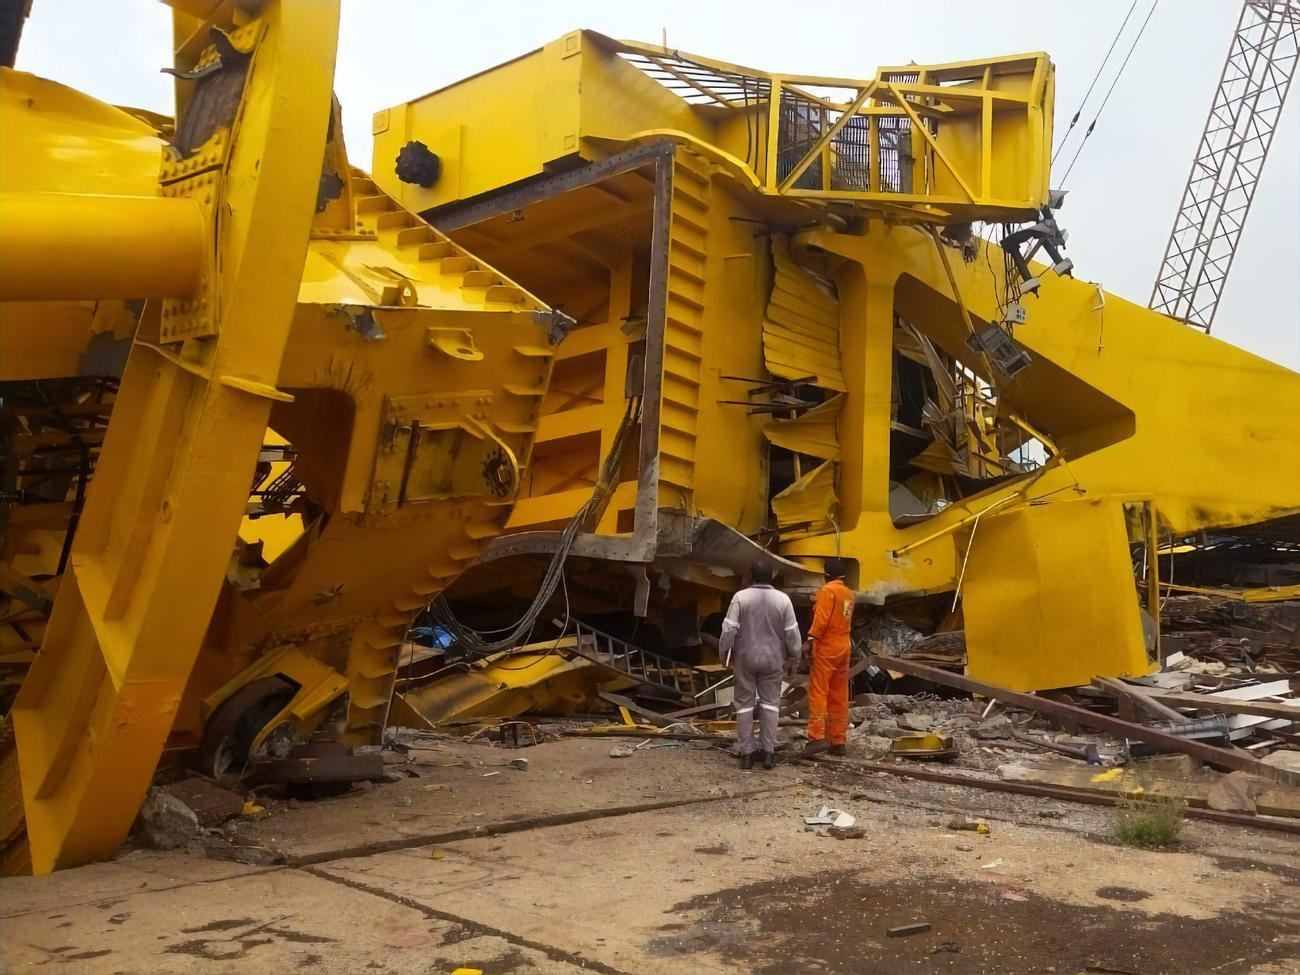 70-тонный кран упал и раздавил рабочих в Индии: 11 погибших – жуткое видео 18+